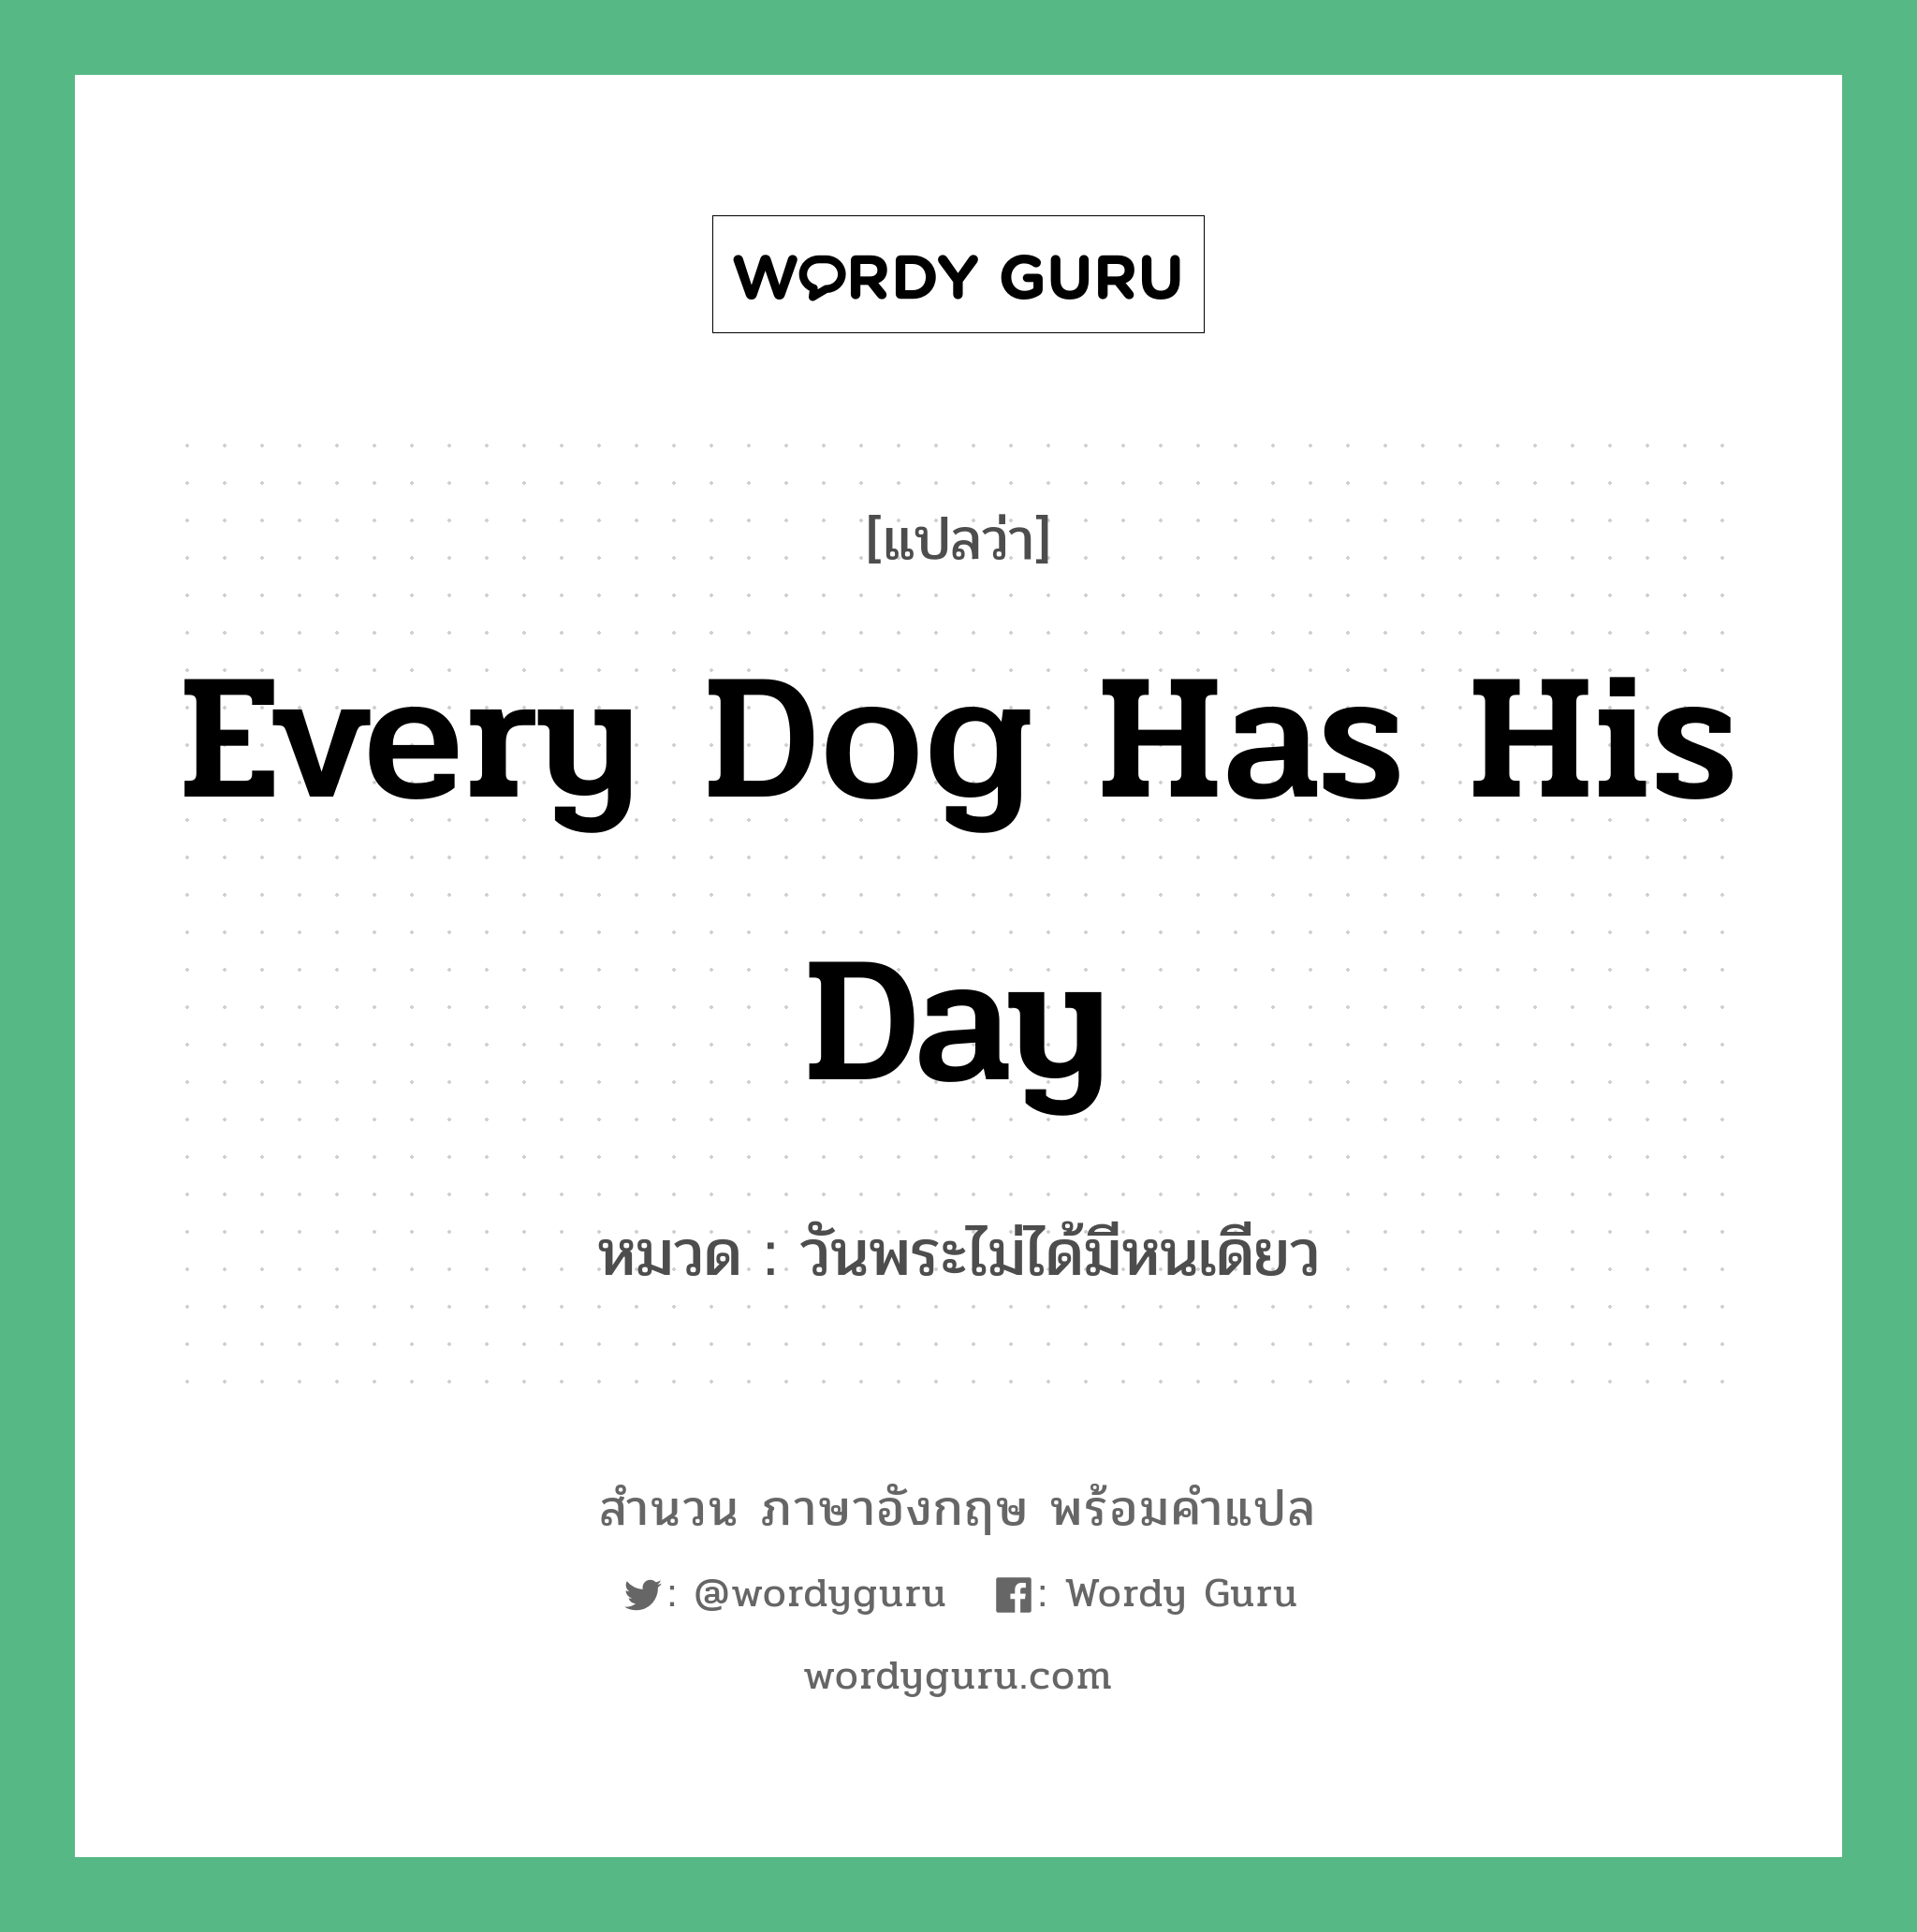 วันพระไม่ได้มีหนเดียว ภาษาอังกฤษ?, สำนวนภาษาอังกฤษ วันพระไม่ได้มีหนเดียว แปลว่า วันพระไม่ได้มีหนเดียว หมวด Every dog has his day Every dog has its day หมวด Every dog has its day